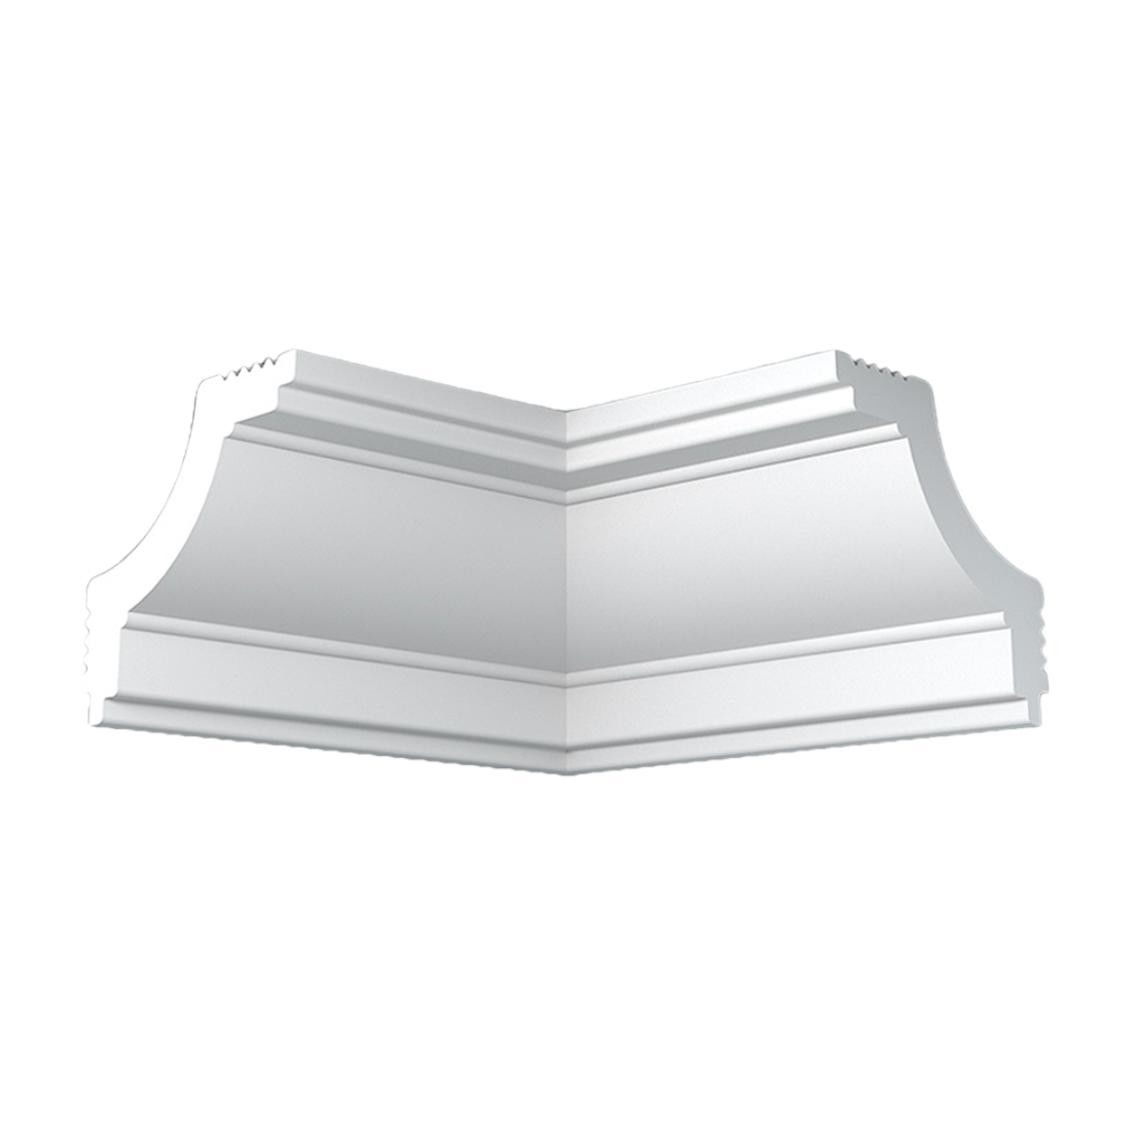 Уголок потолочный экструдированный ПЛИНТЭКС внутренний K45/45, 45х45мм, белый, 4шт